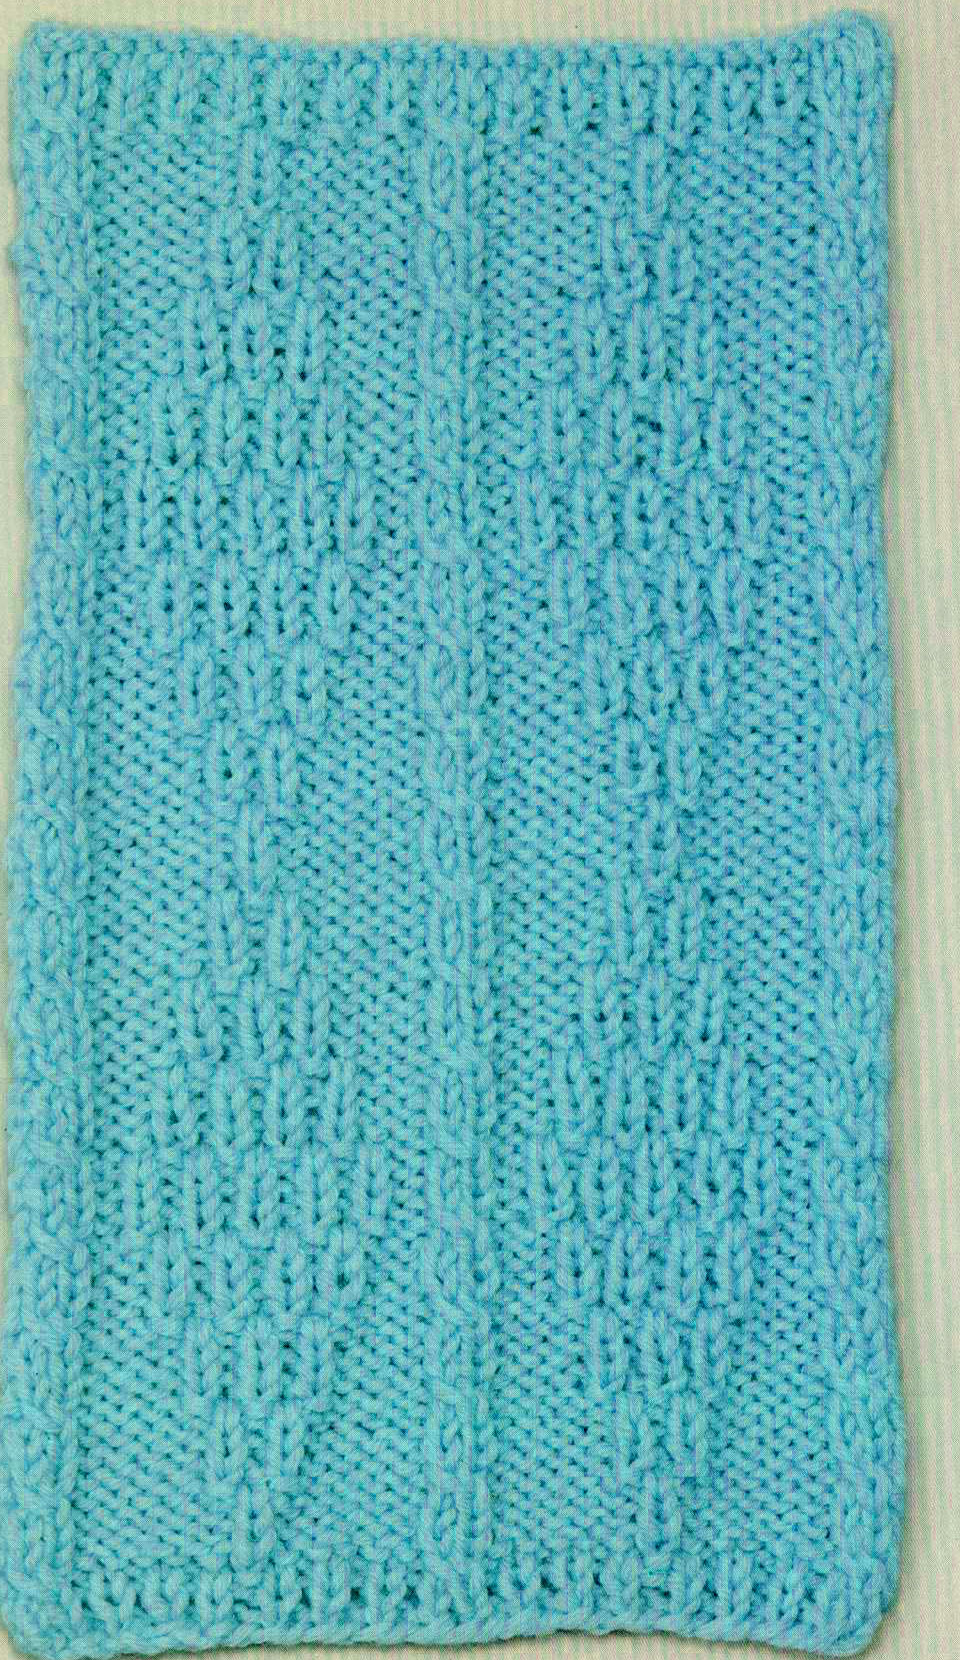 diamon-motif-knitting-stitch